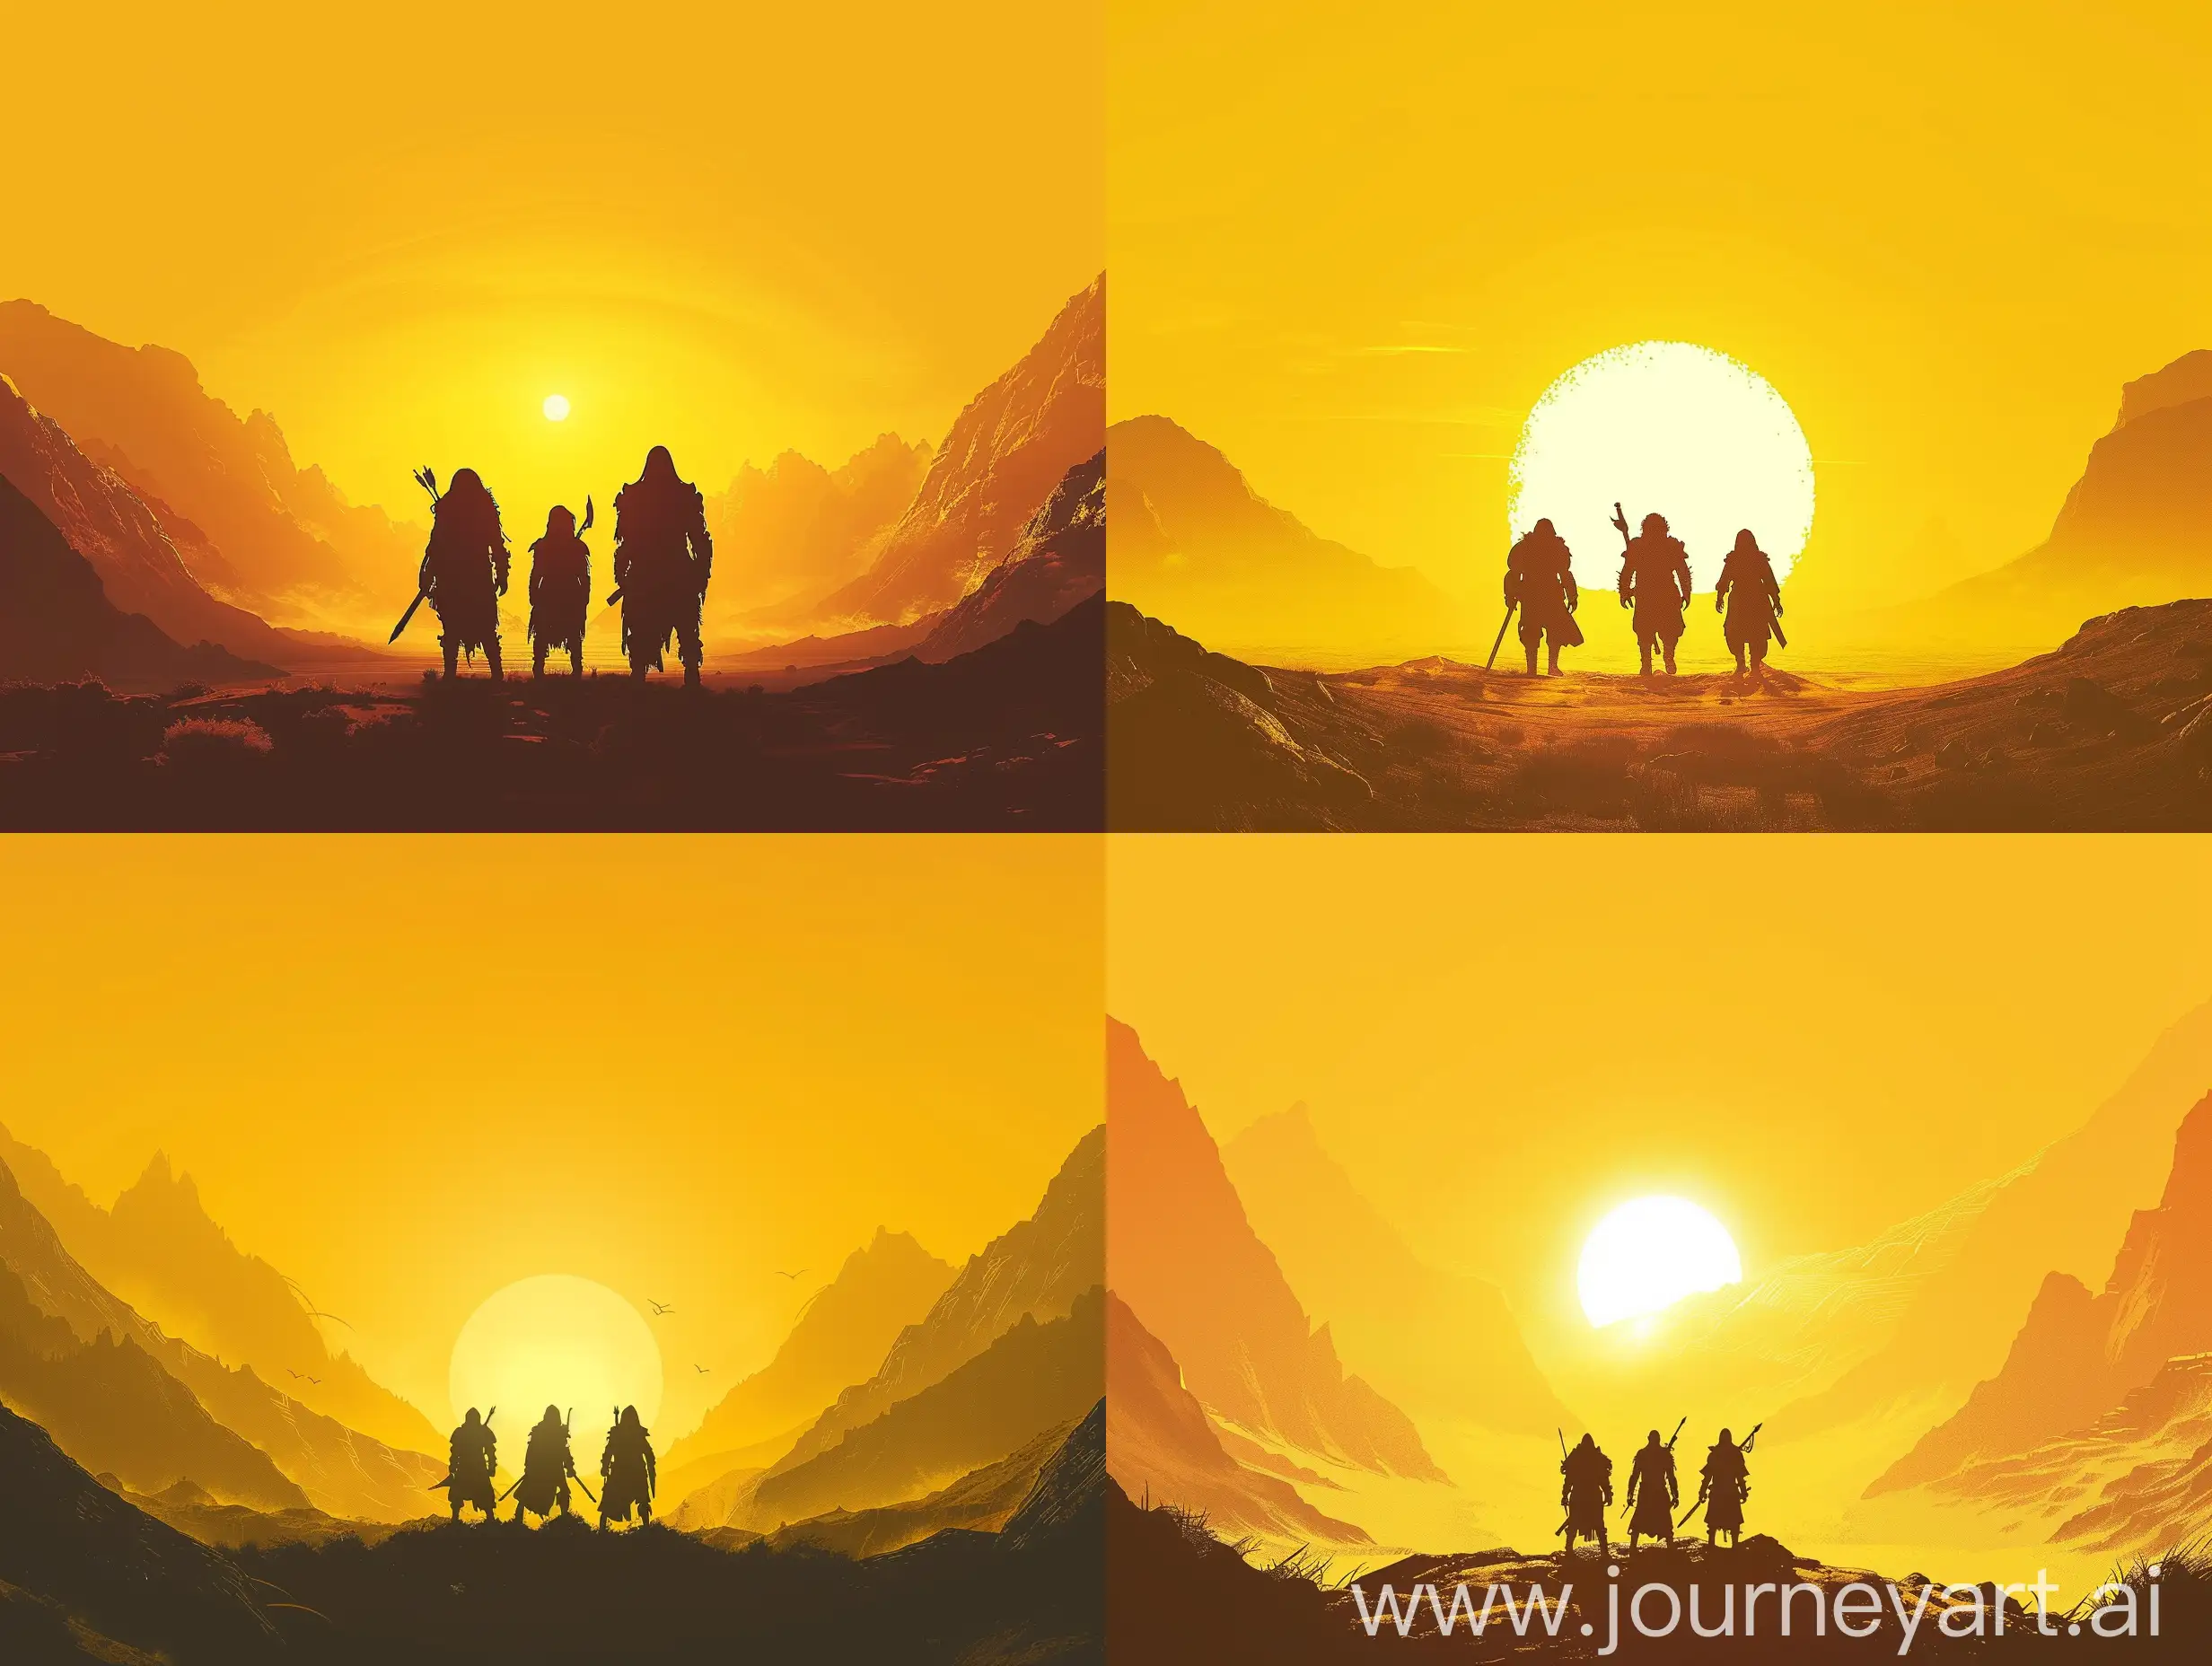 Sunset-Fantasy-Travelers-Silhouette-against-Mountain-Range